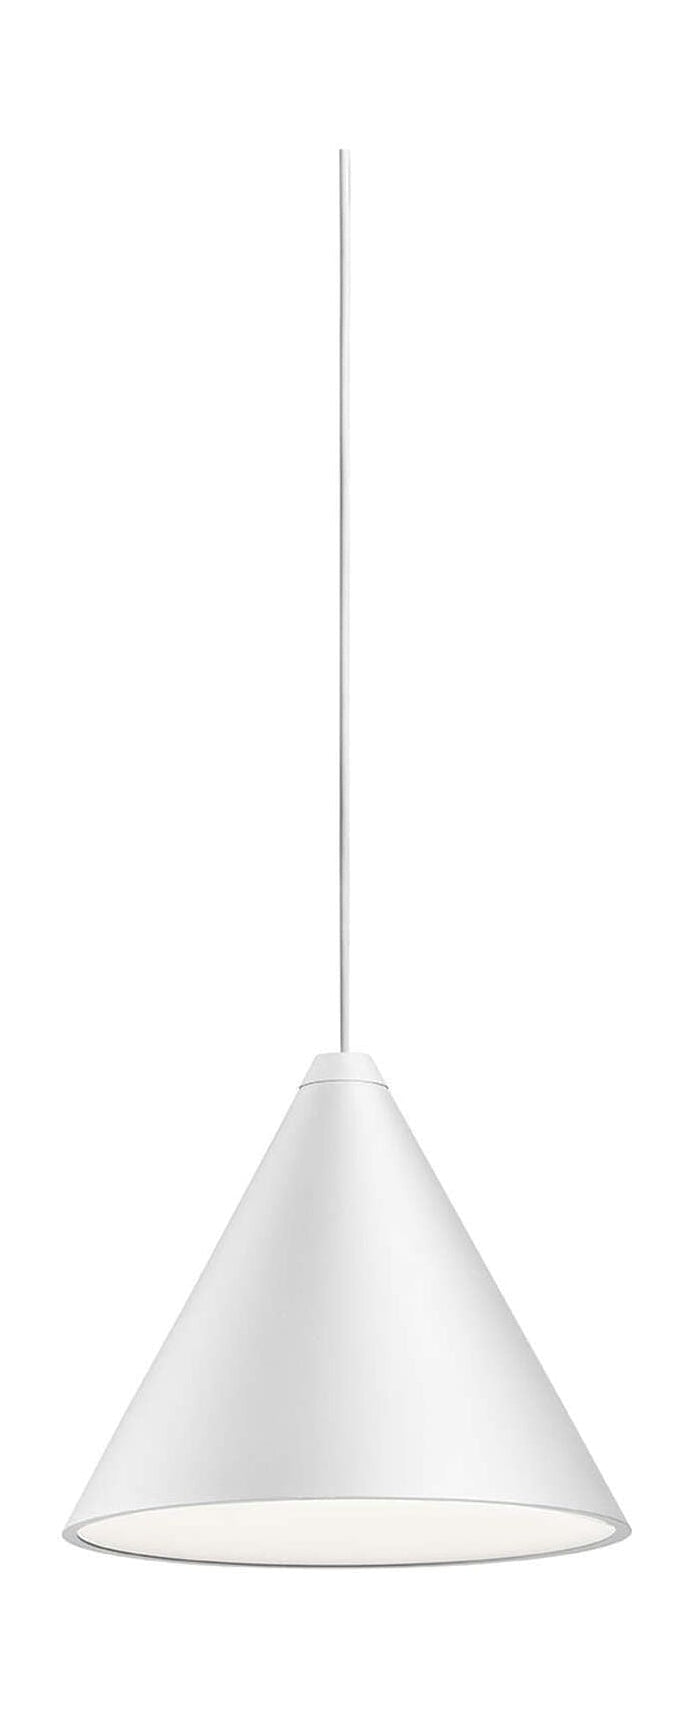 Lampa wisząca stożka strunowego FLOS 22 m, biała